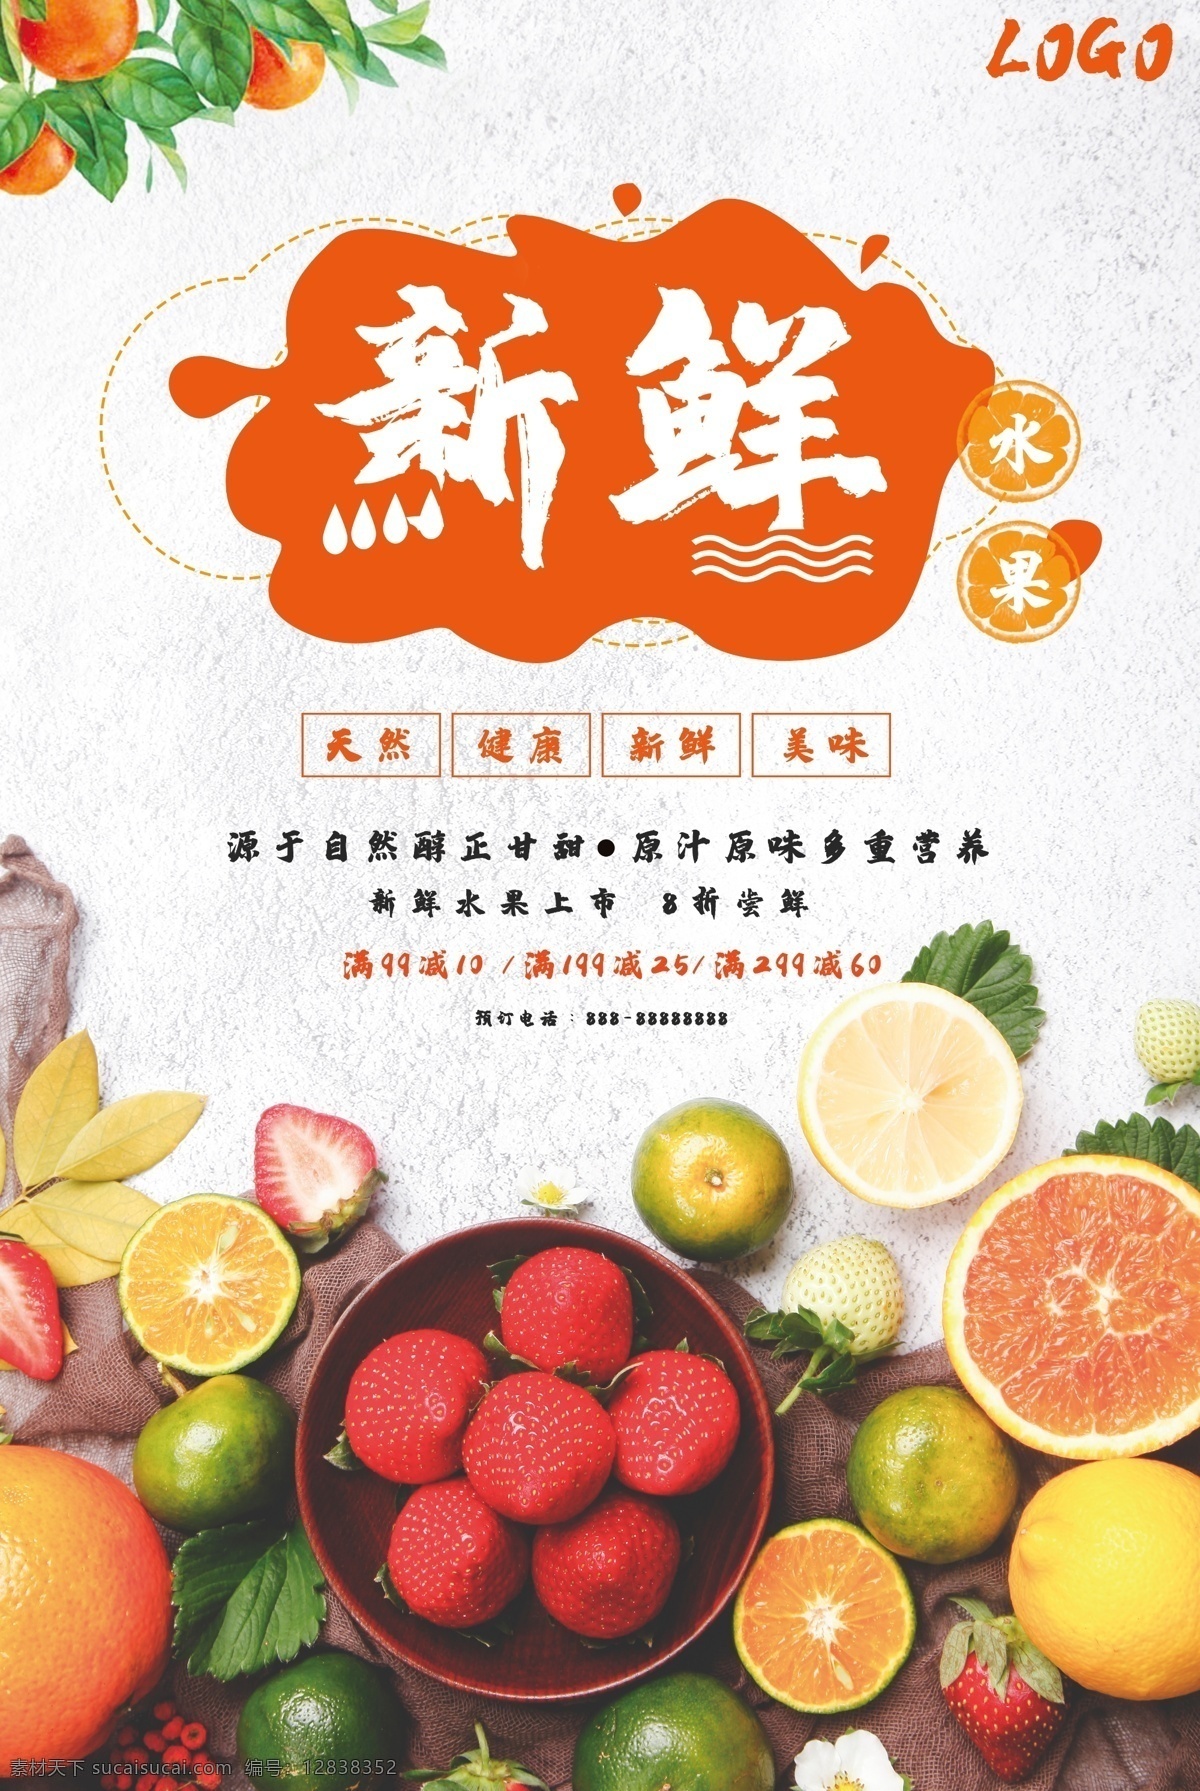 新鲜 水果 促销 海报 鲜榨 美味 纯正 香浓 天然 健康 柠檬 草莓 橘子 橙子 鲜橙